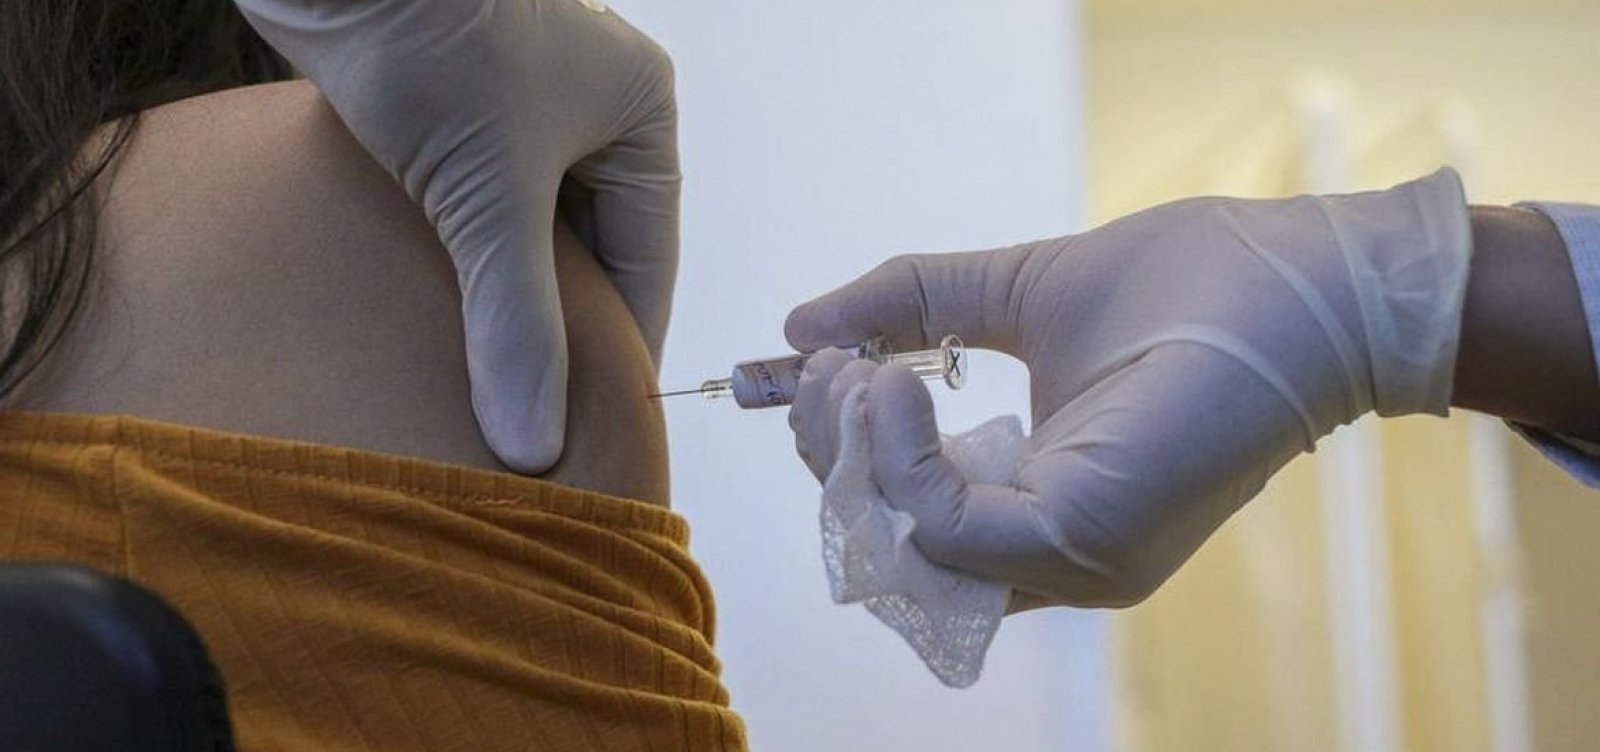 Governo proíbe que empresas comprem vacinas contra Covid-19 para funcionários 